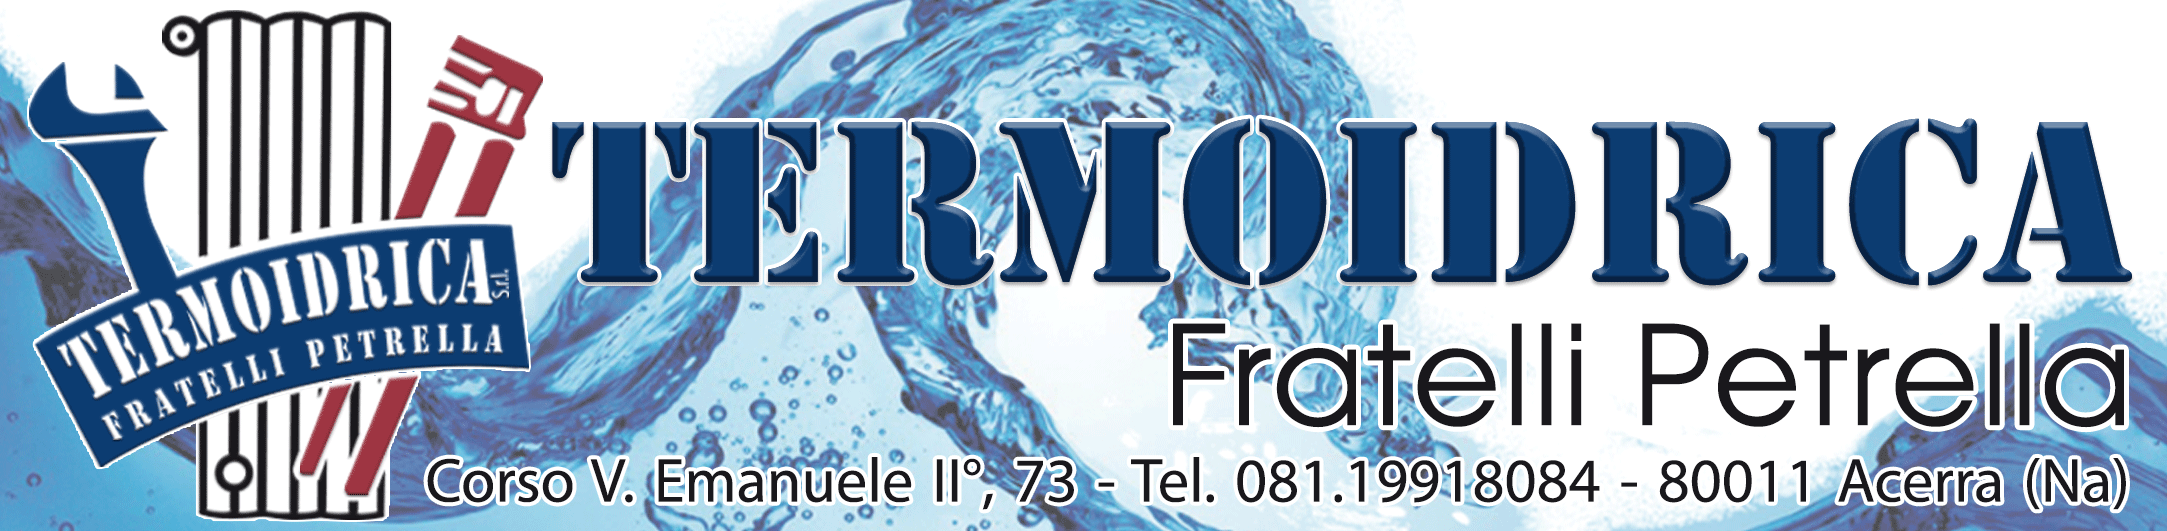 www.Termoidricasrl.it - Trattamento acque - Impianti Termo-idrici, per gpl e gas metano, Antincendio, autoclavi, solare termico, Montaggio e assistenza caldaie 